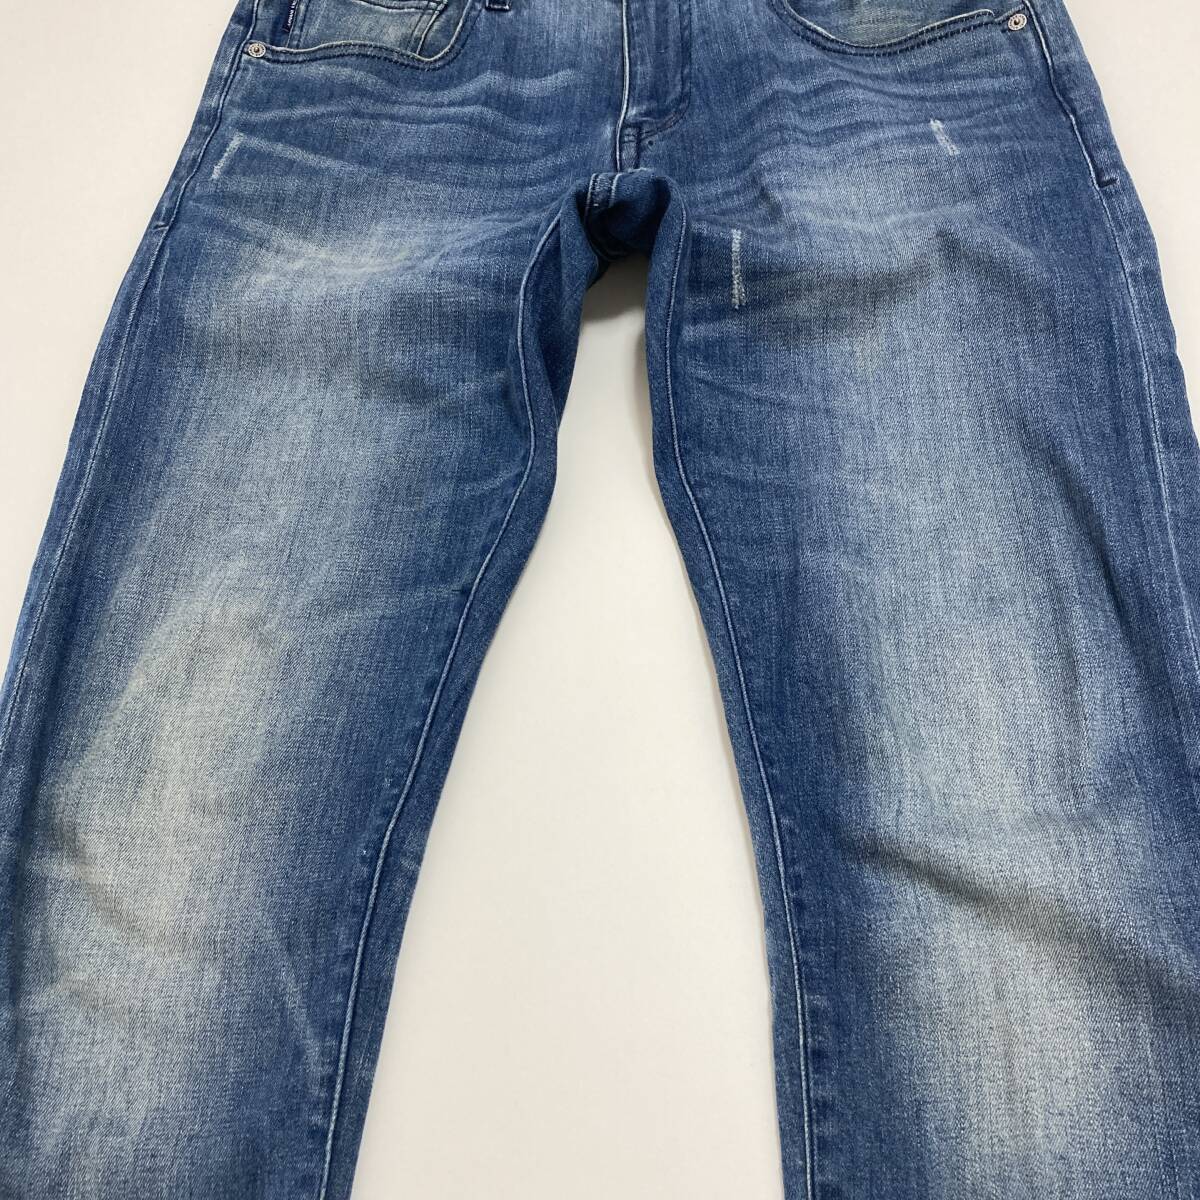 A/X ARMANI EXCHANGE used processing slim Fit Denim pants men's W32 Armani Exchange jeans ji- bread 4010214